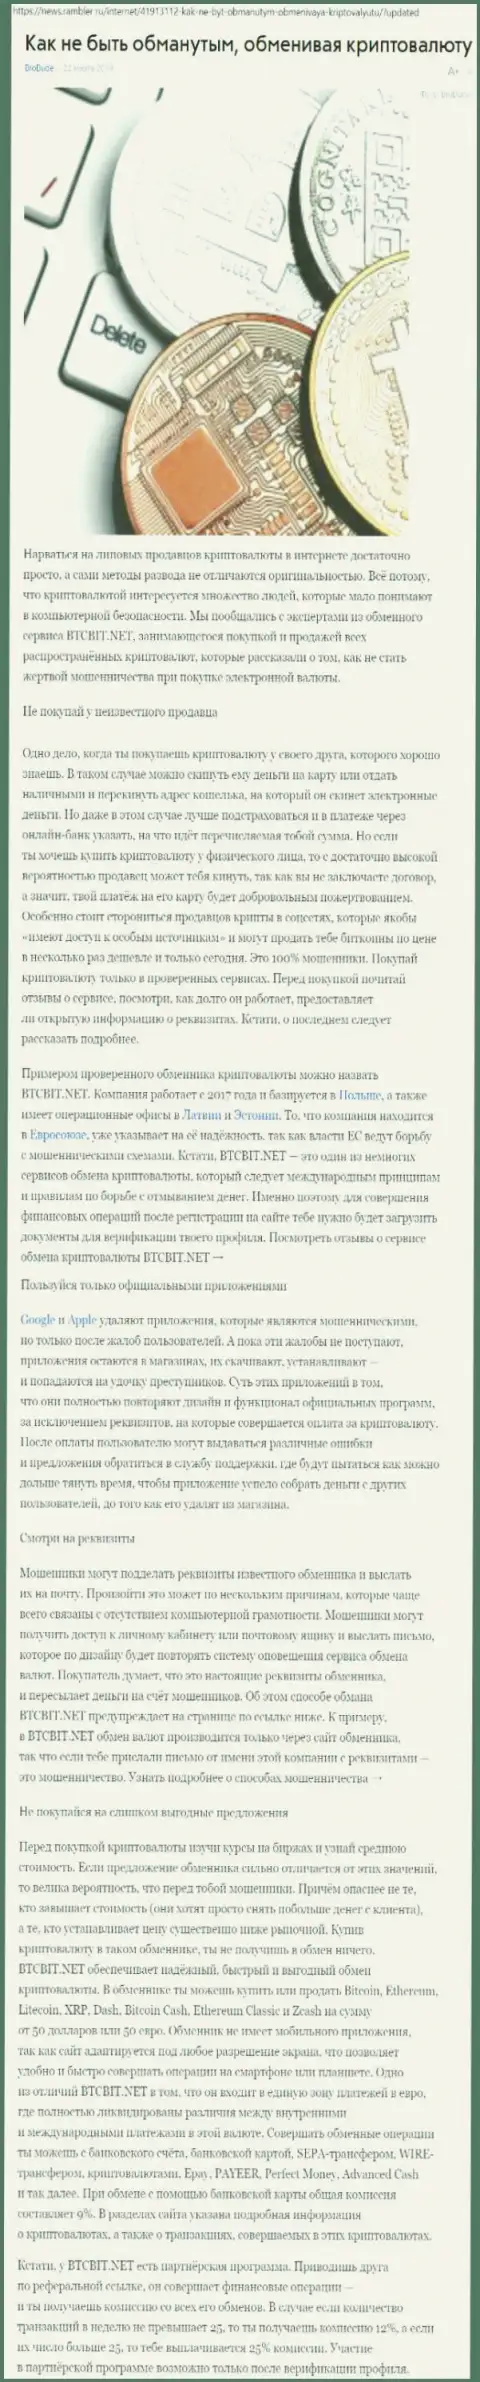 Публикация о БТЦБИТ на news rambler ru